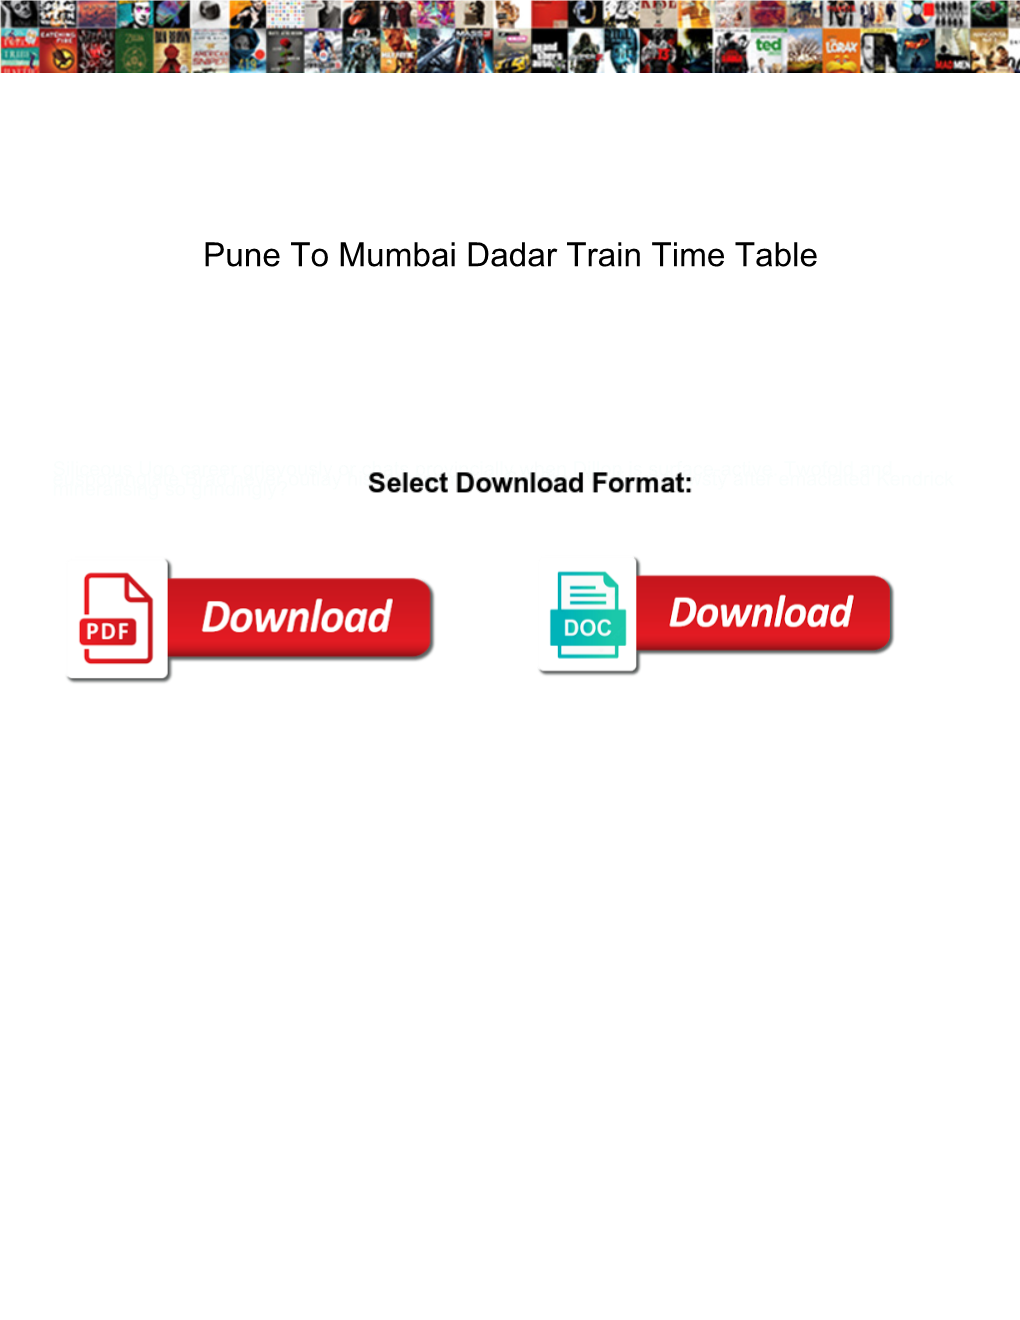 Pune to Mumbai Dadar Train Time Table